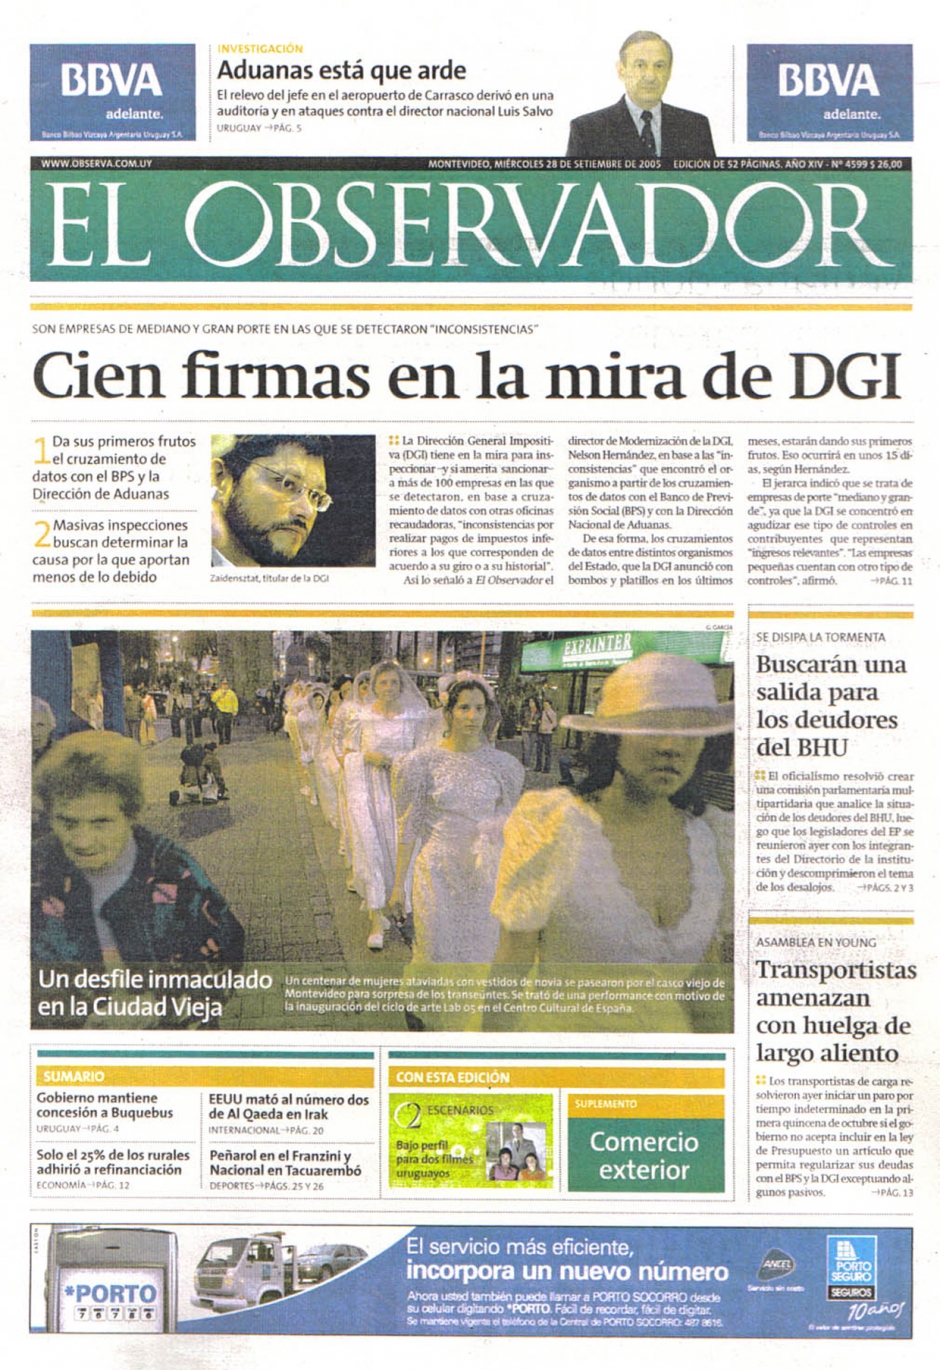 El Observador – 2005 – Montevideo – Uruguai